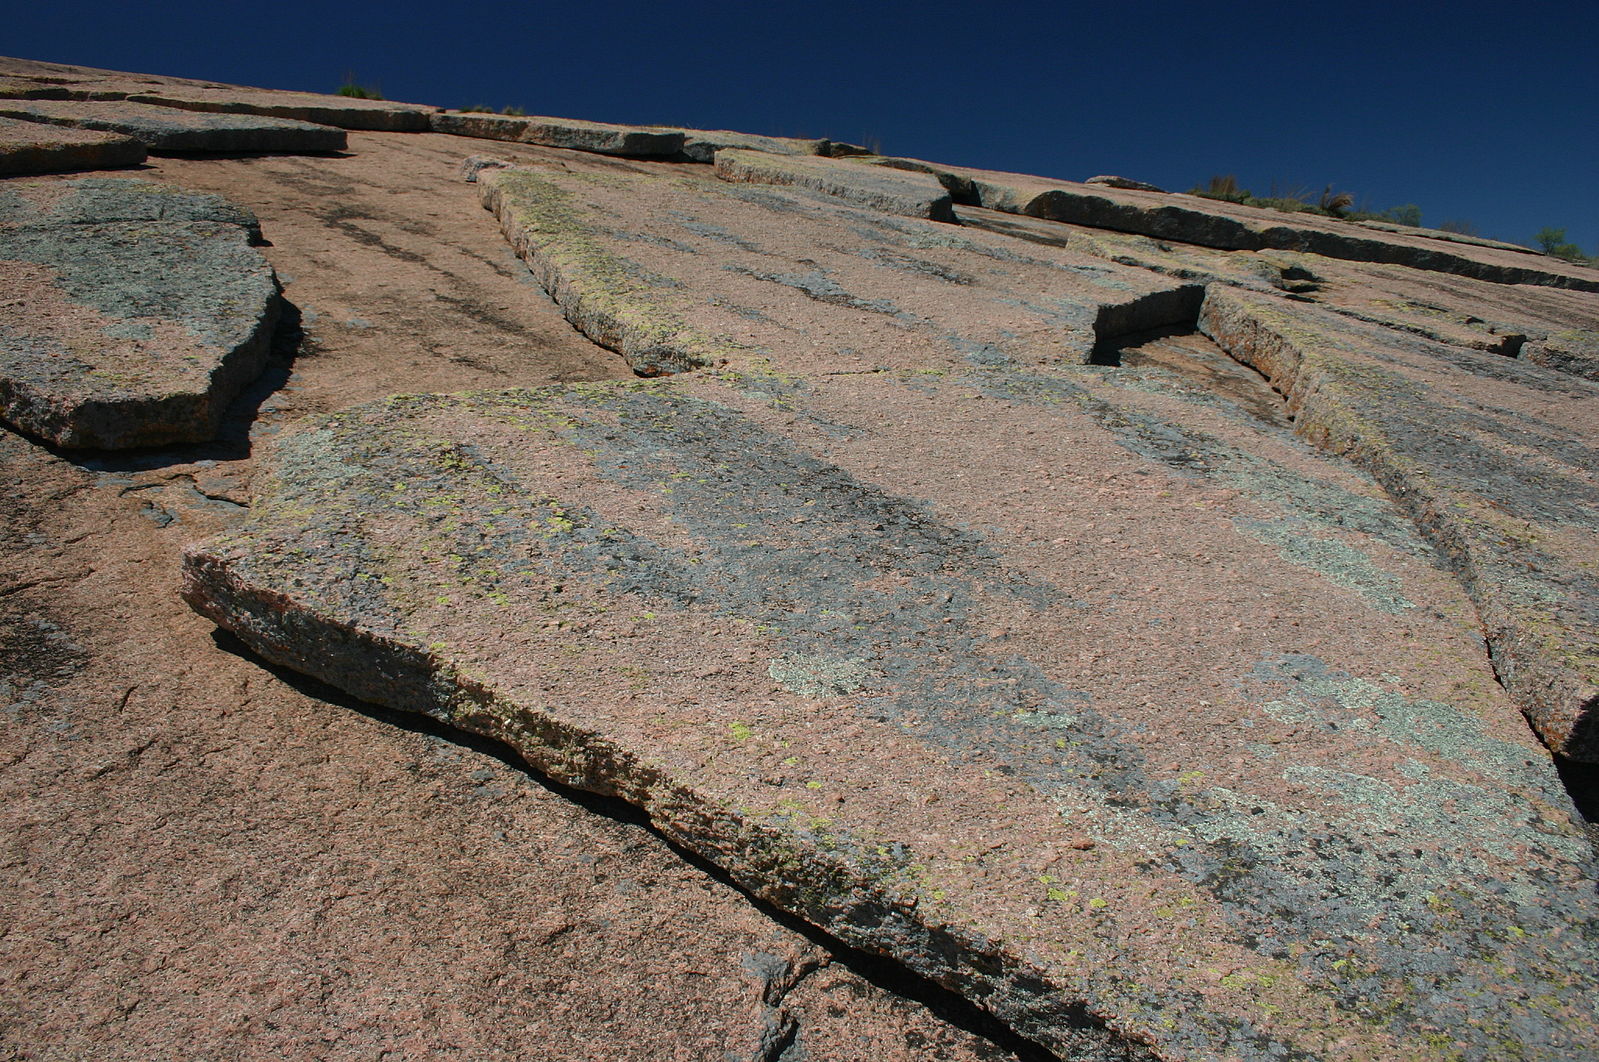 La roca de granito tiene una capa relativamente delgada que se está desprendiendo